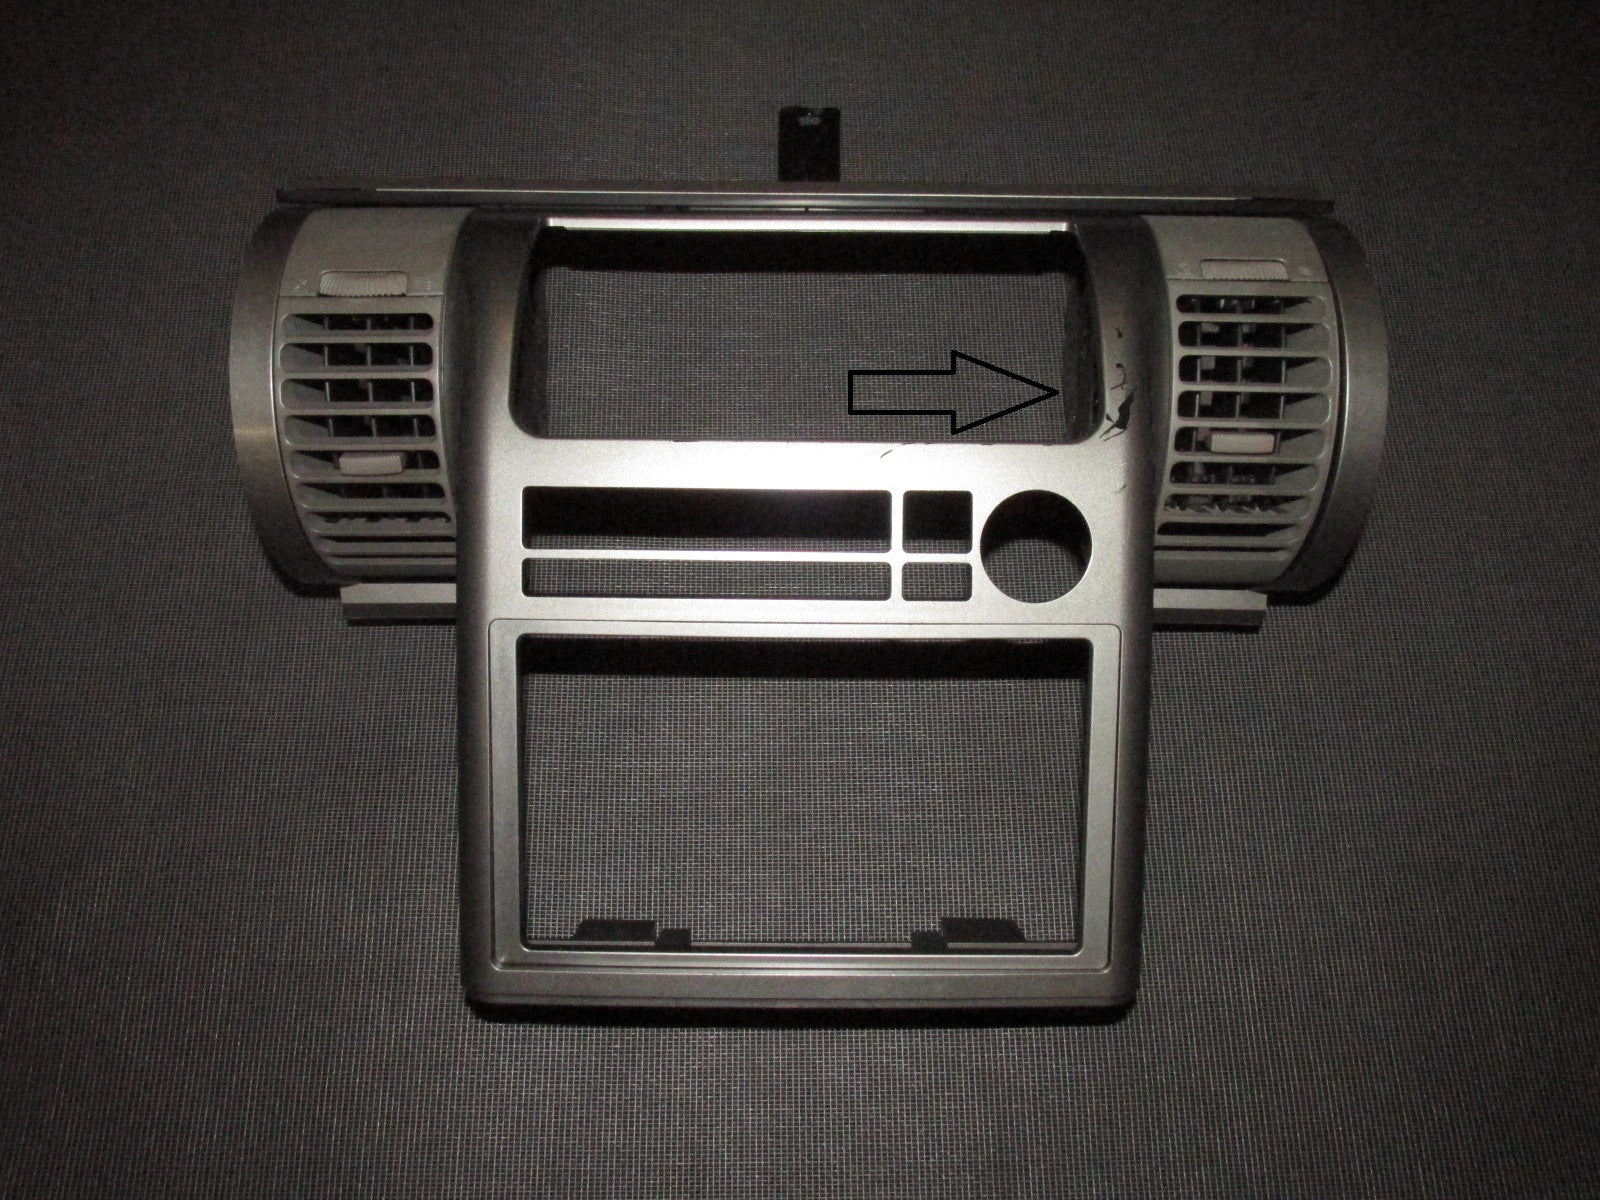 03 04 05 06 Infiniti G35 OEM Dash Center Stereo Cover Panel